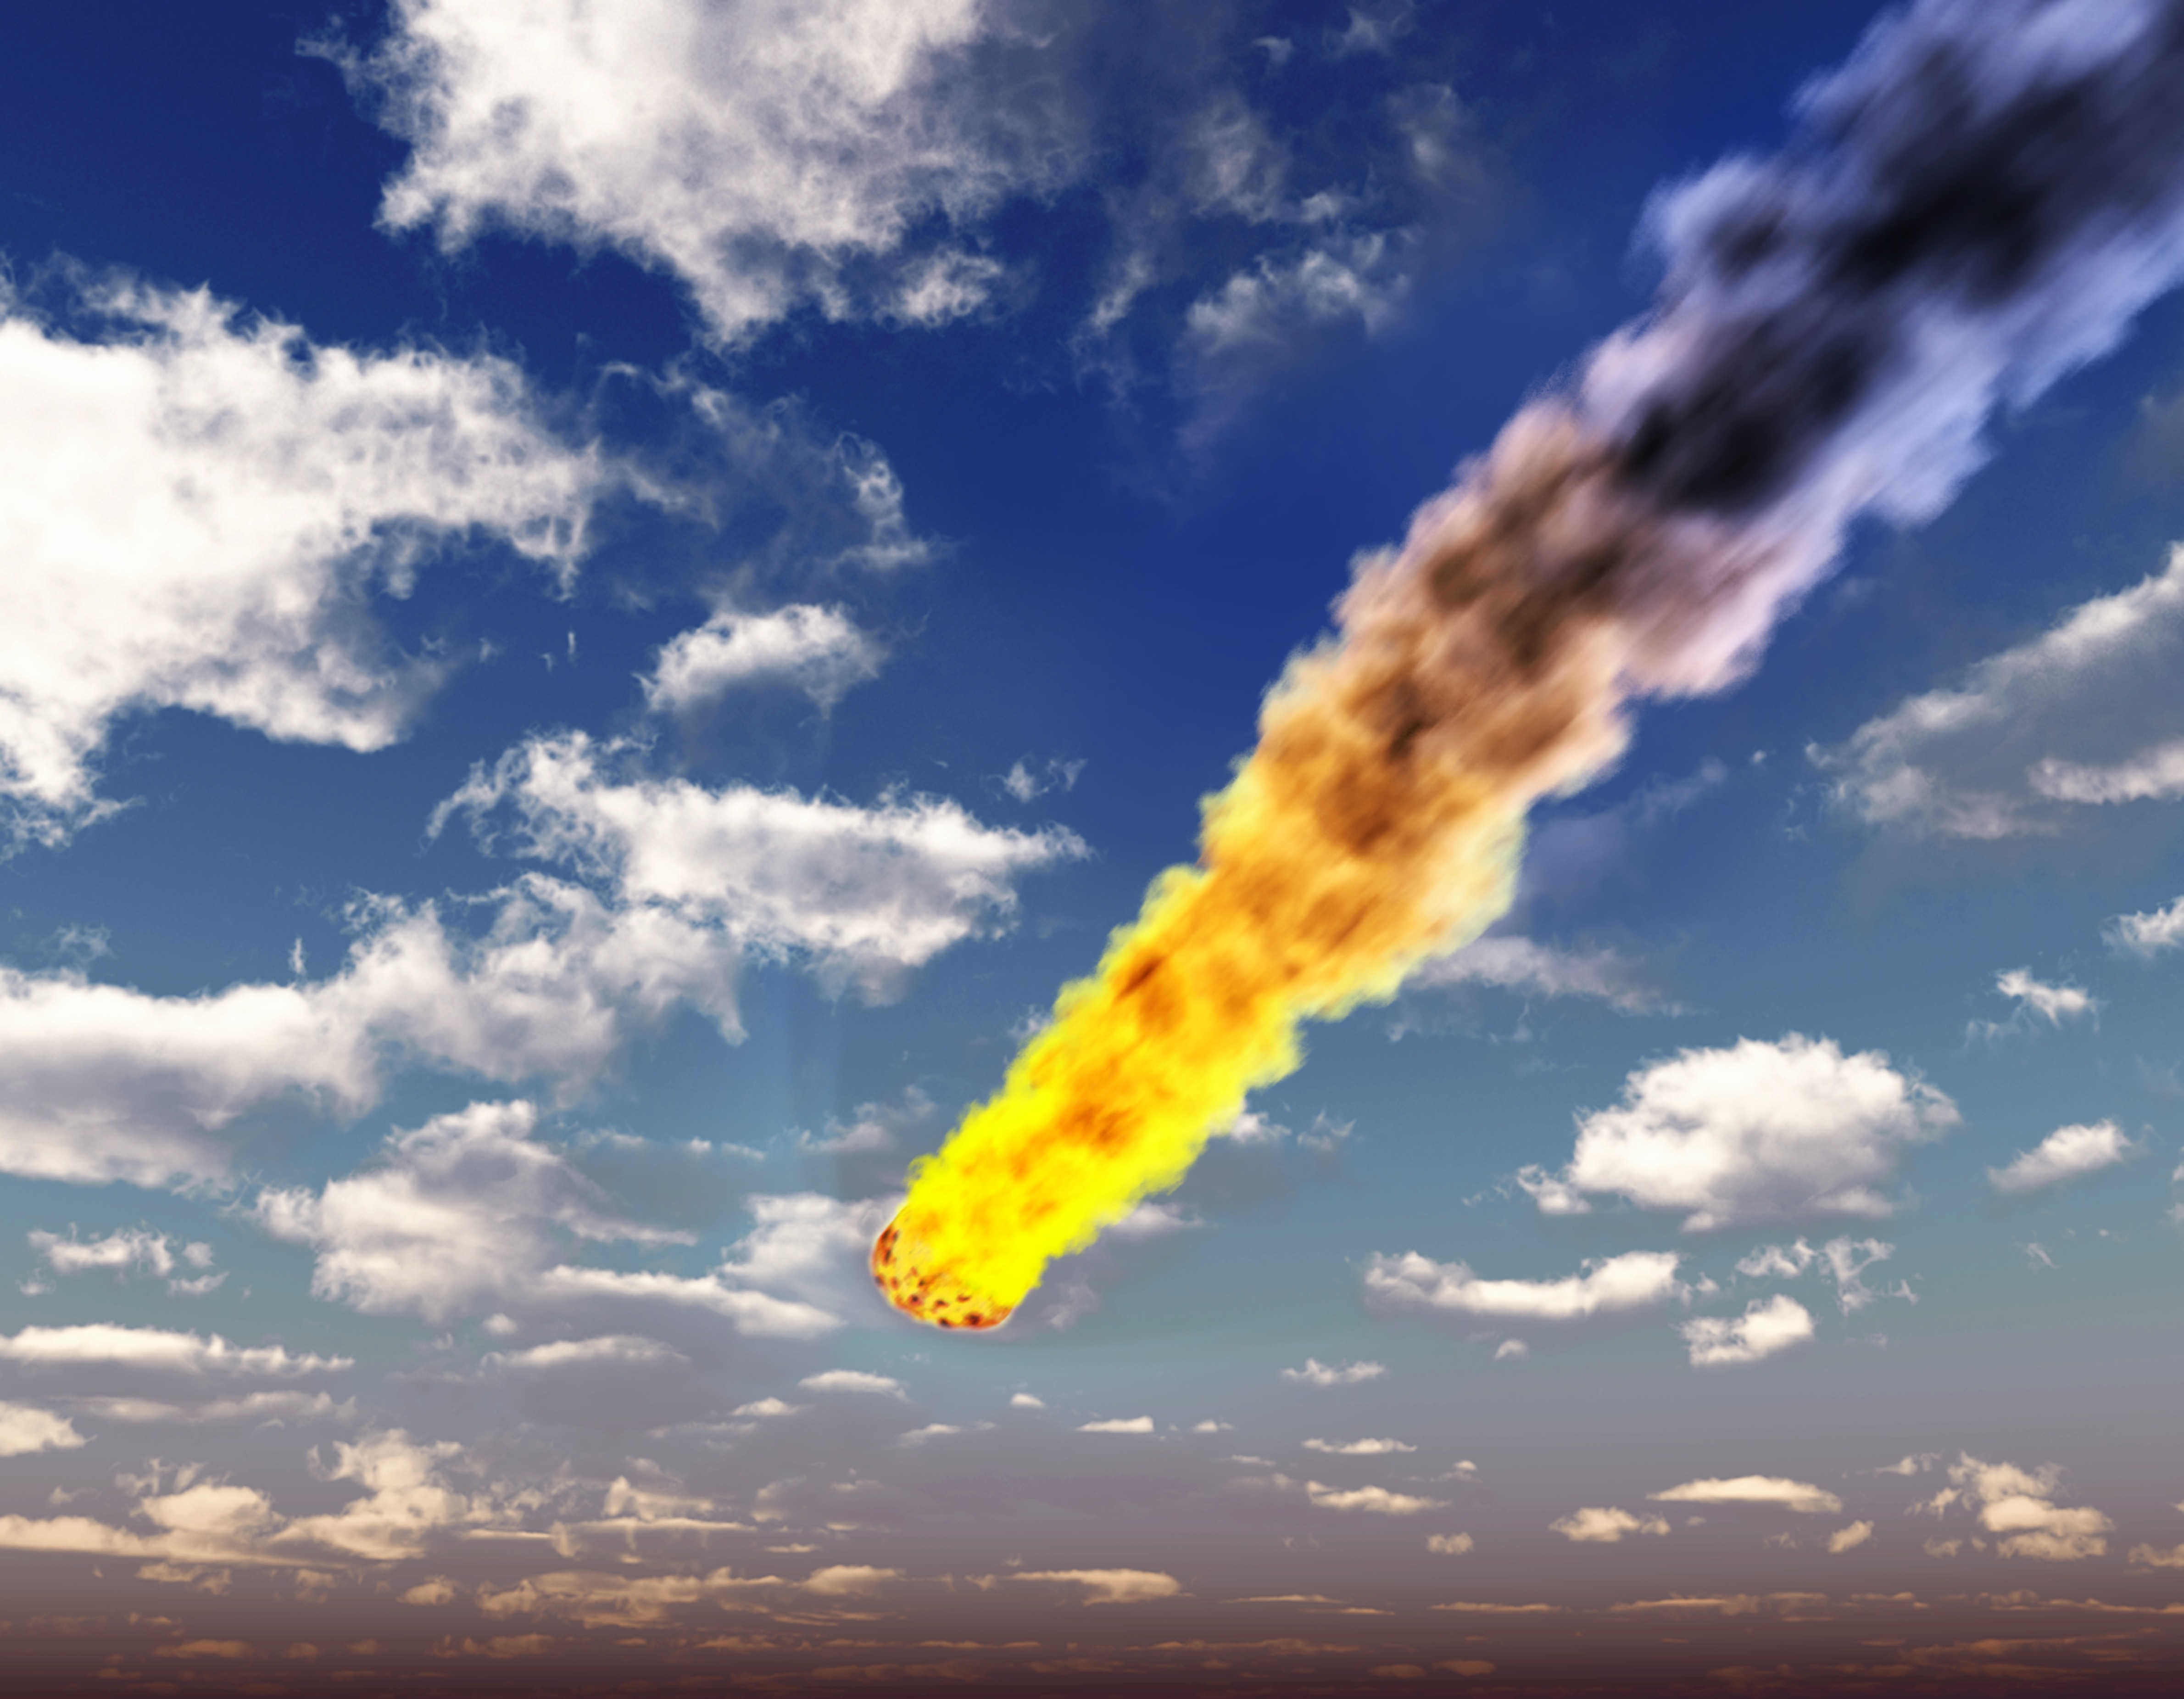 2,1 kilotonna TNT erejével robbant fel egy meteor Grönland felett még júliusban